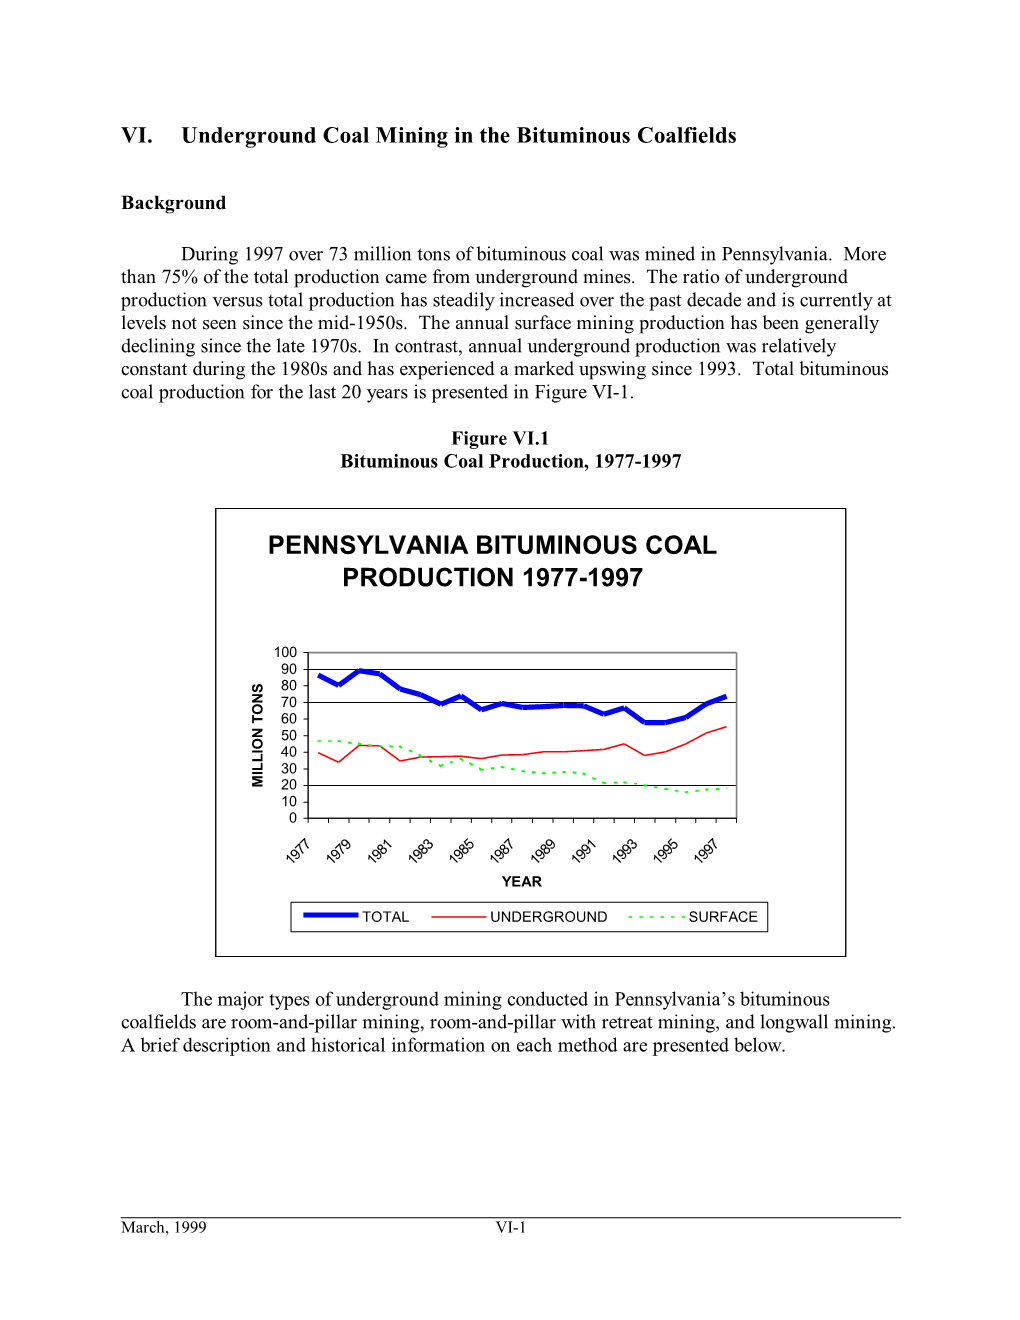 Pennsylvania Bituminous Coal Production 1977-1997